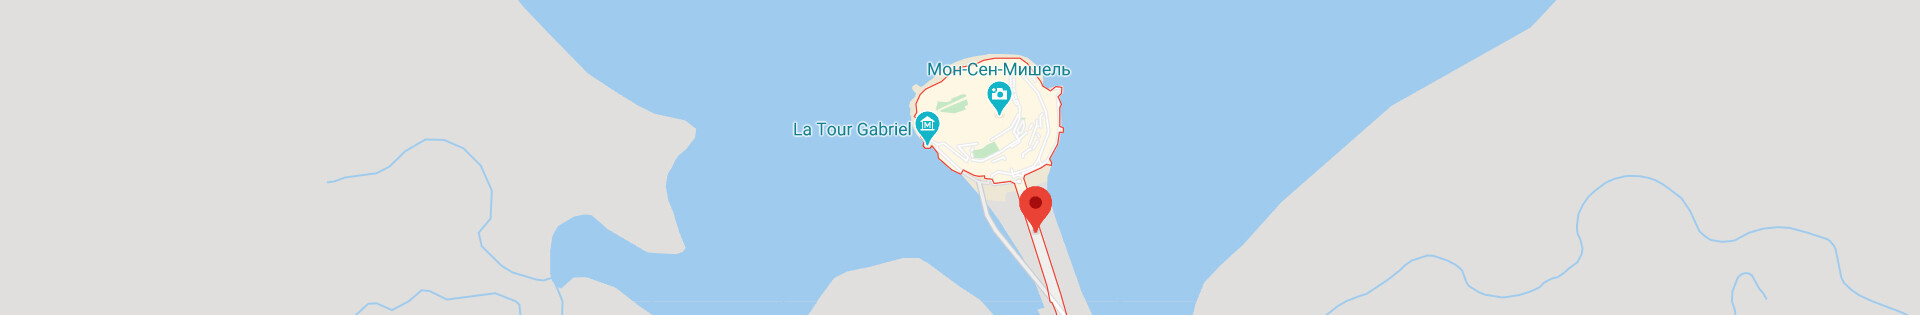 Остров Мон-Сен-Мишель — где находится, фото, как добраться